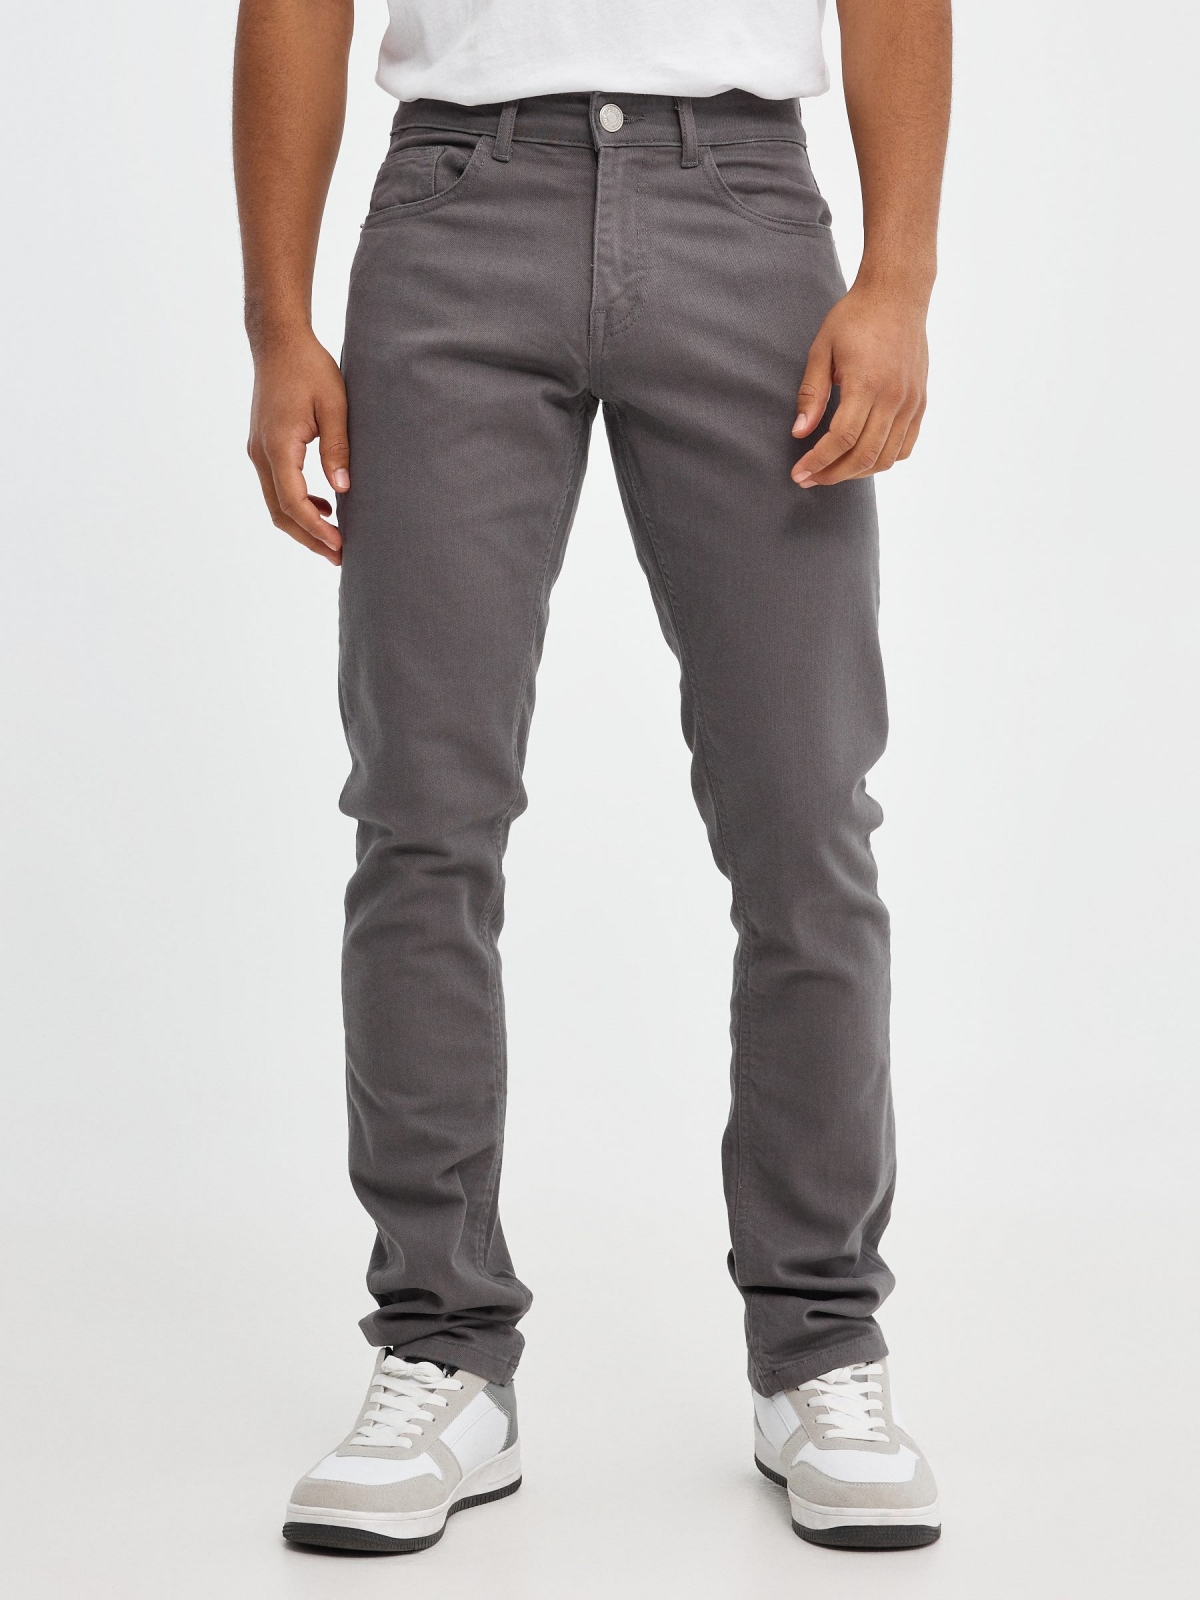 Jeans básicos de colores gris vista media frontal